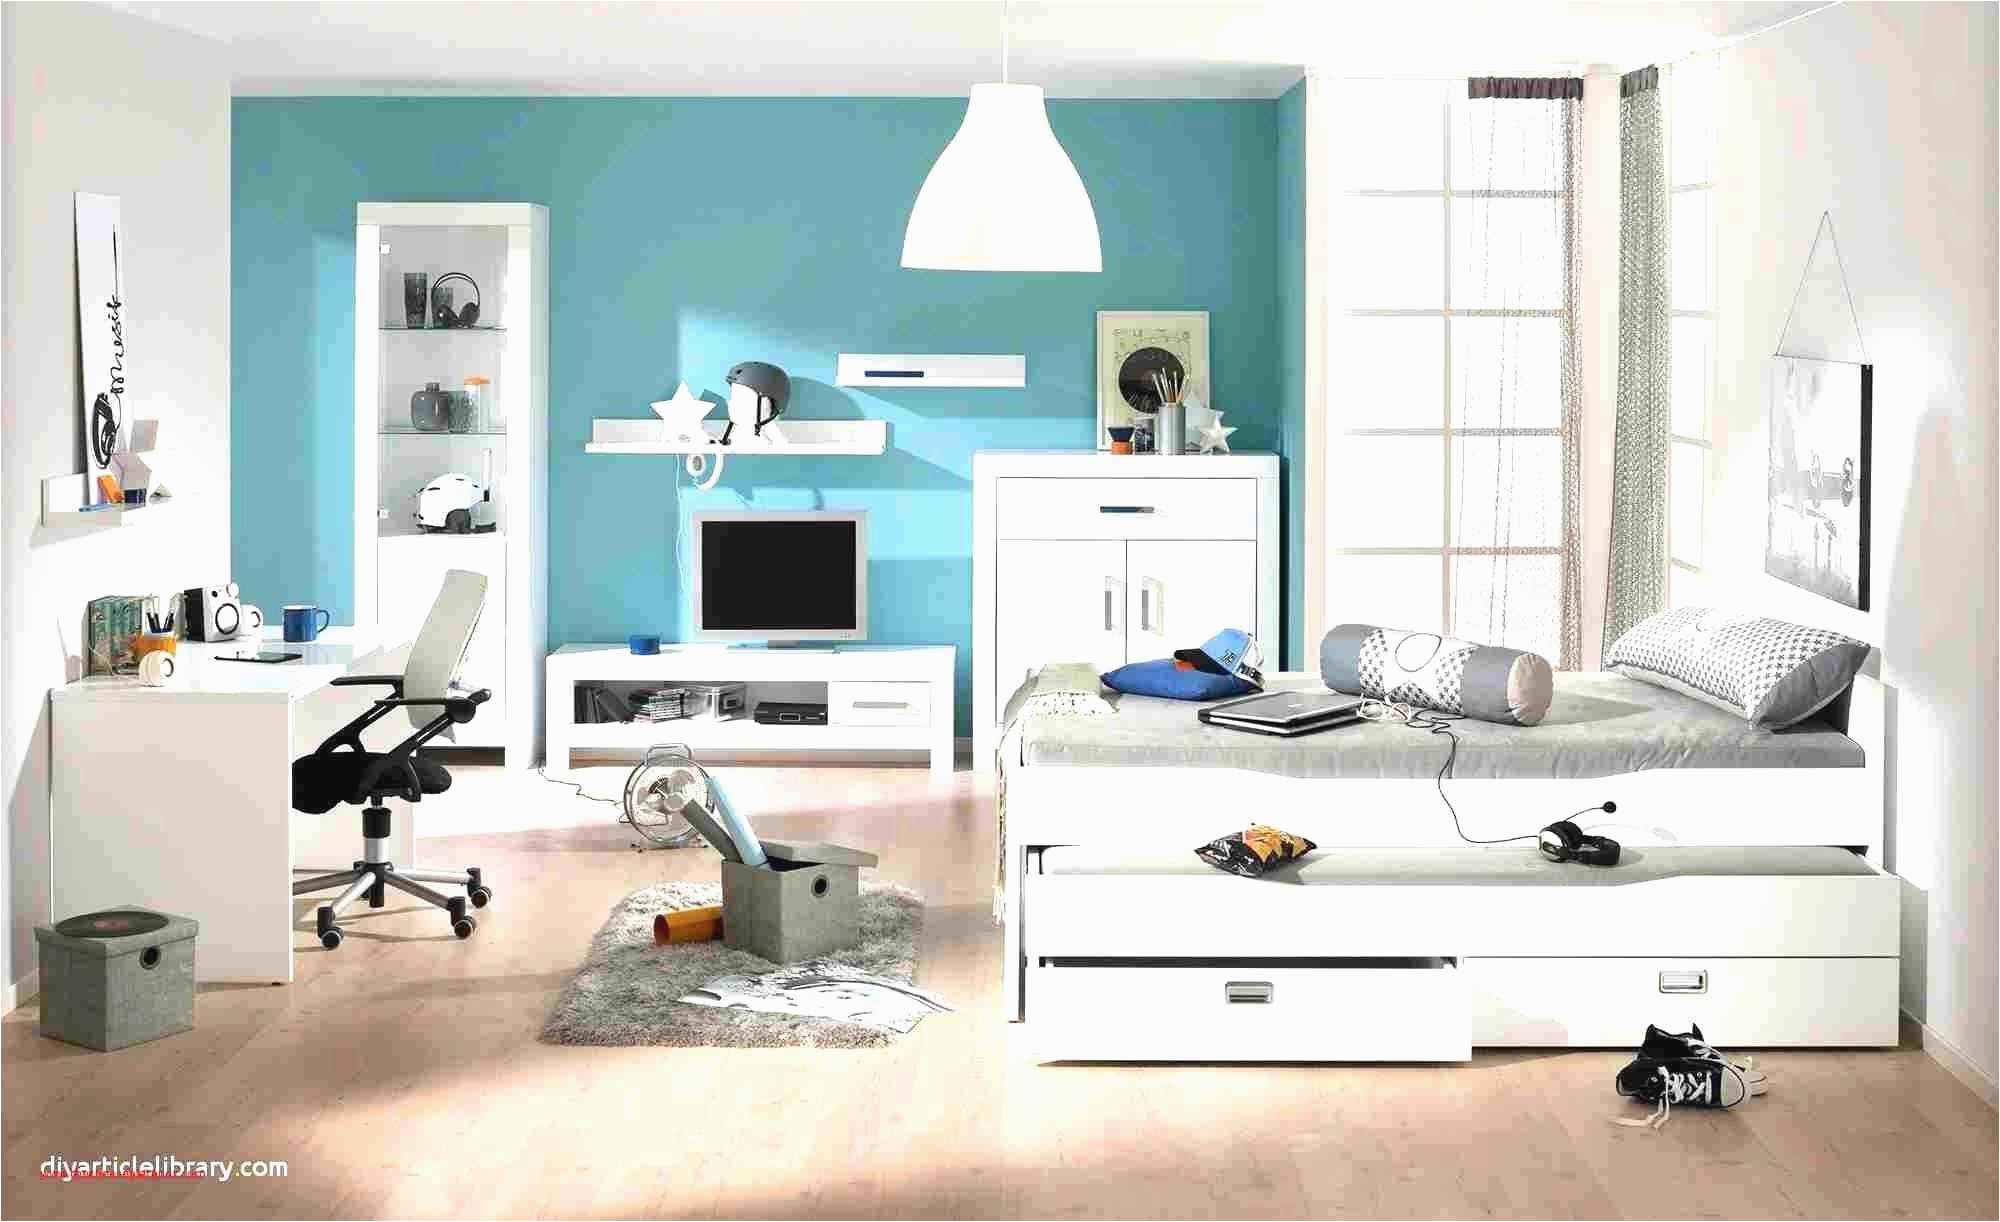 farben fur wohnzimmer reizend bucherregal wohnzimmer design was solltest du tun of farben fur wohnzimmer